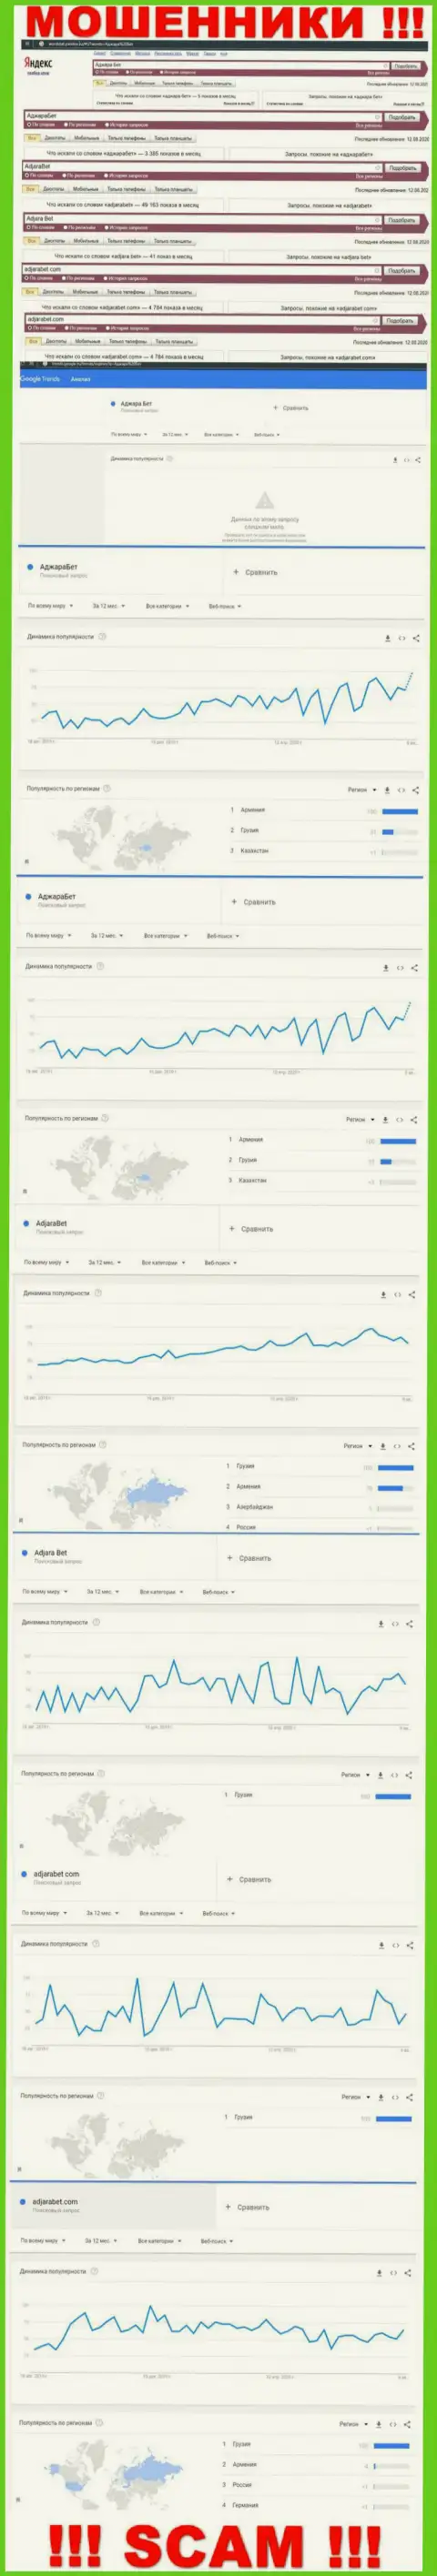 Статистические показатели количества поисковых запросов в глобальной internet сети по мошенникам AdjaraBet